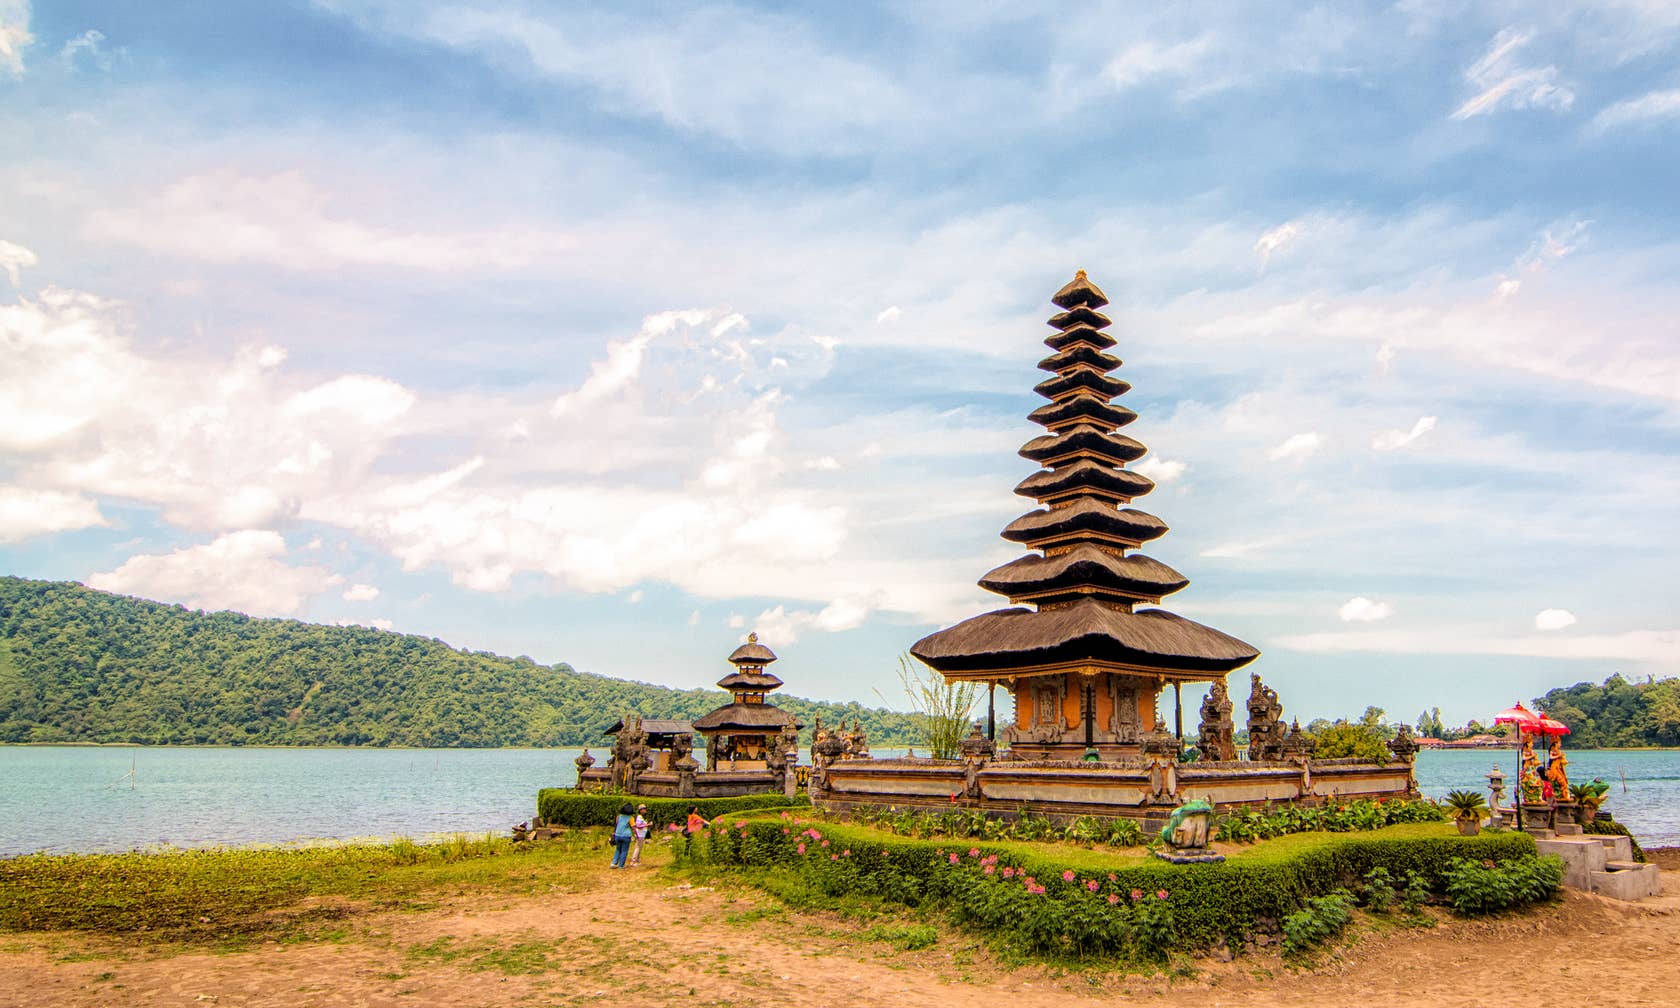 Sewaan percutian di Bali